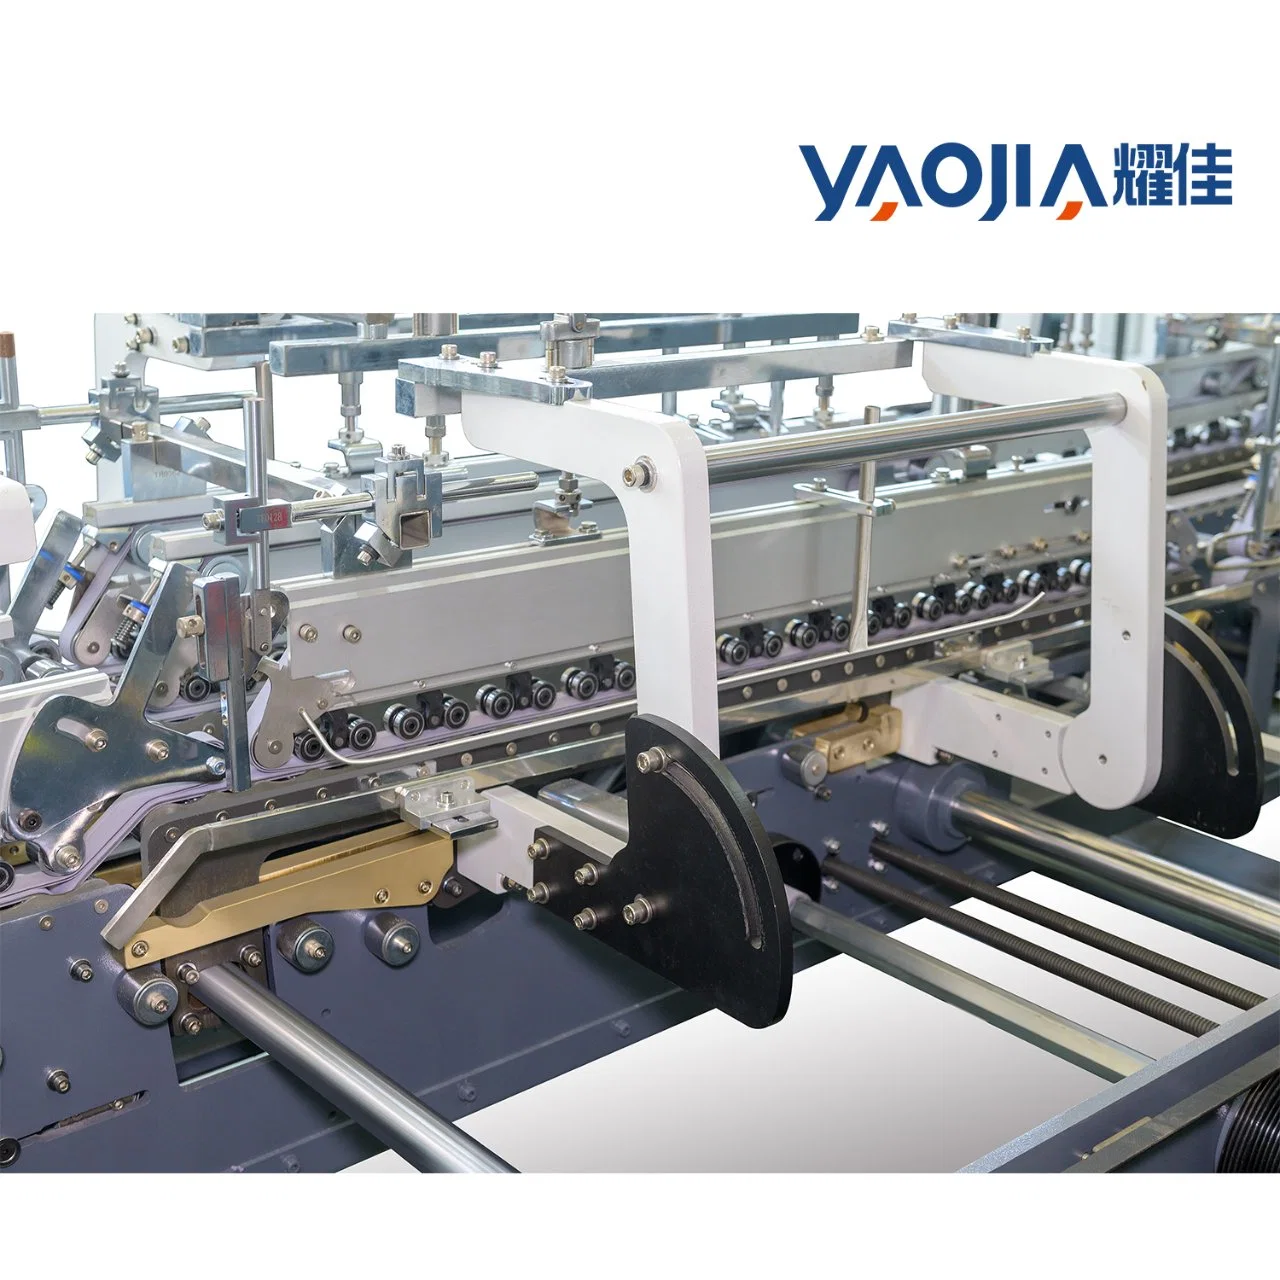 Automatic High-Speed Folder Gluer Yaojia Pallets Small Box Making Machine